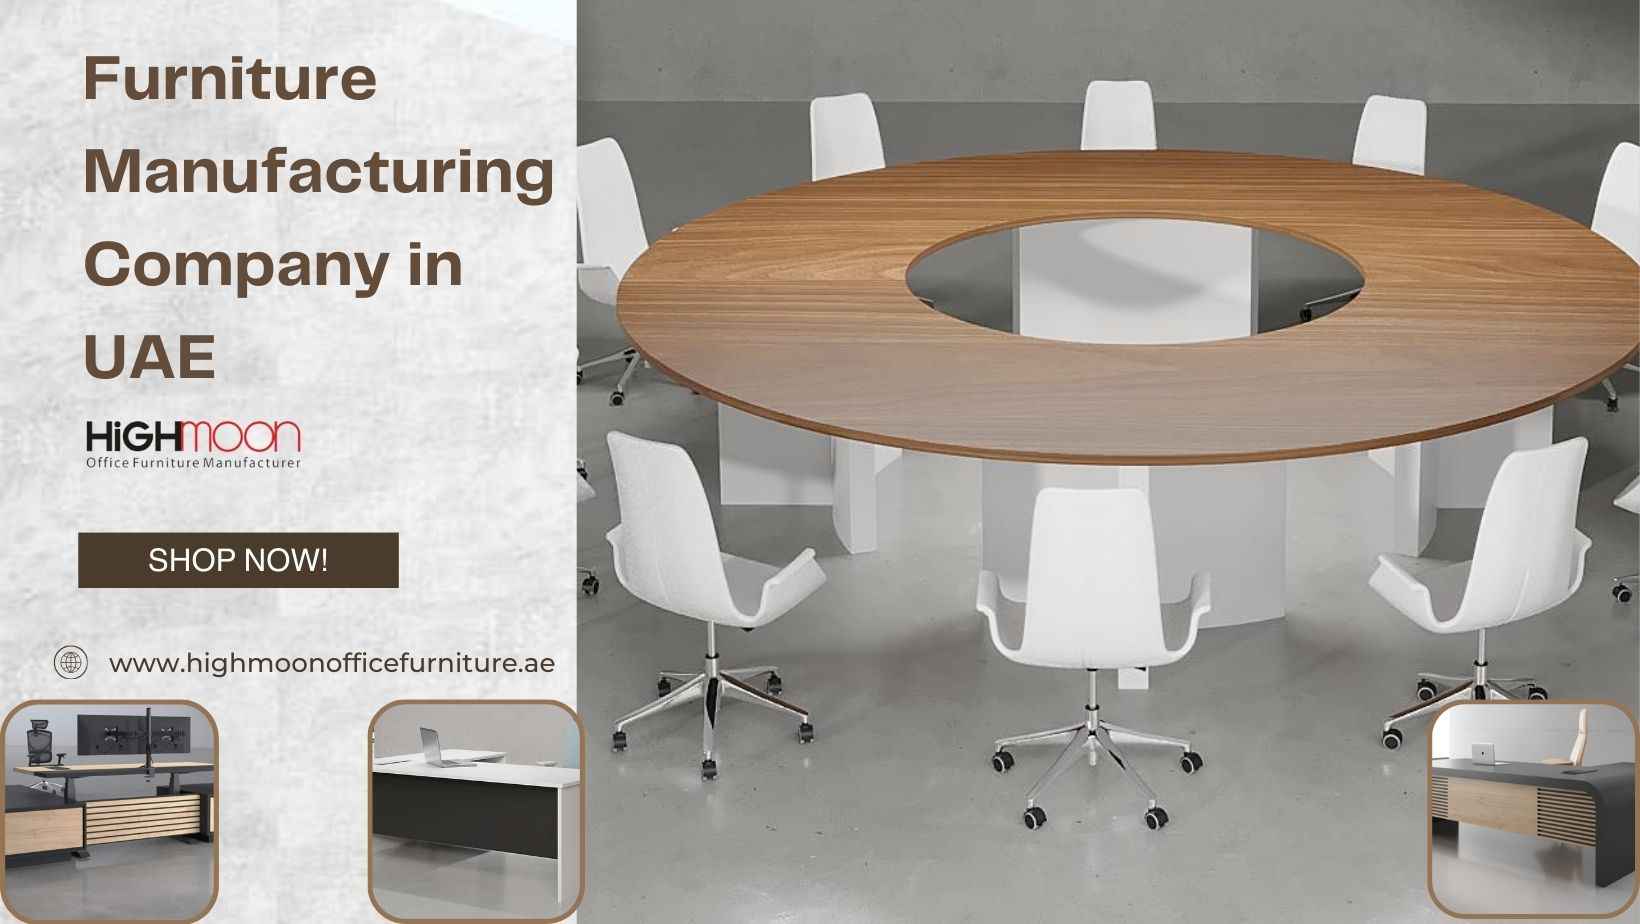 Furniture Manufacturing Company in UAE